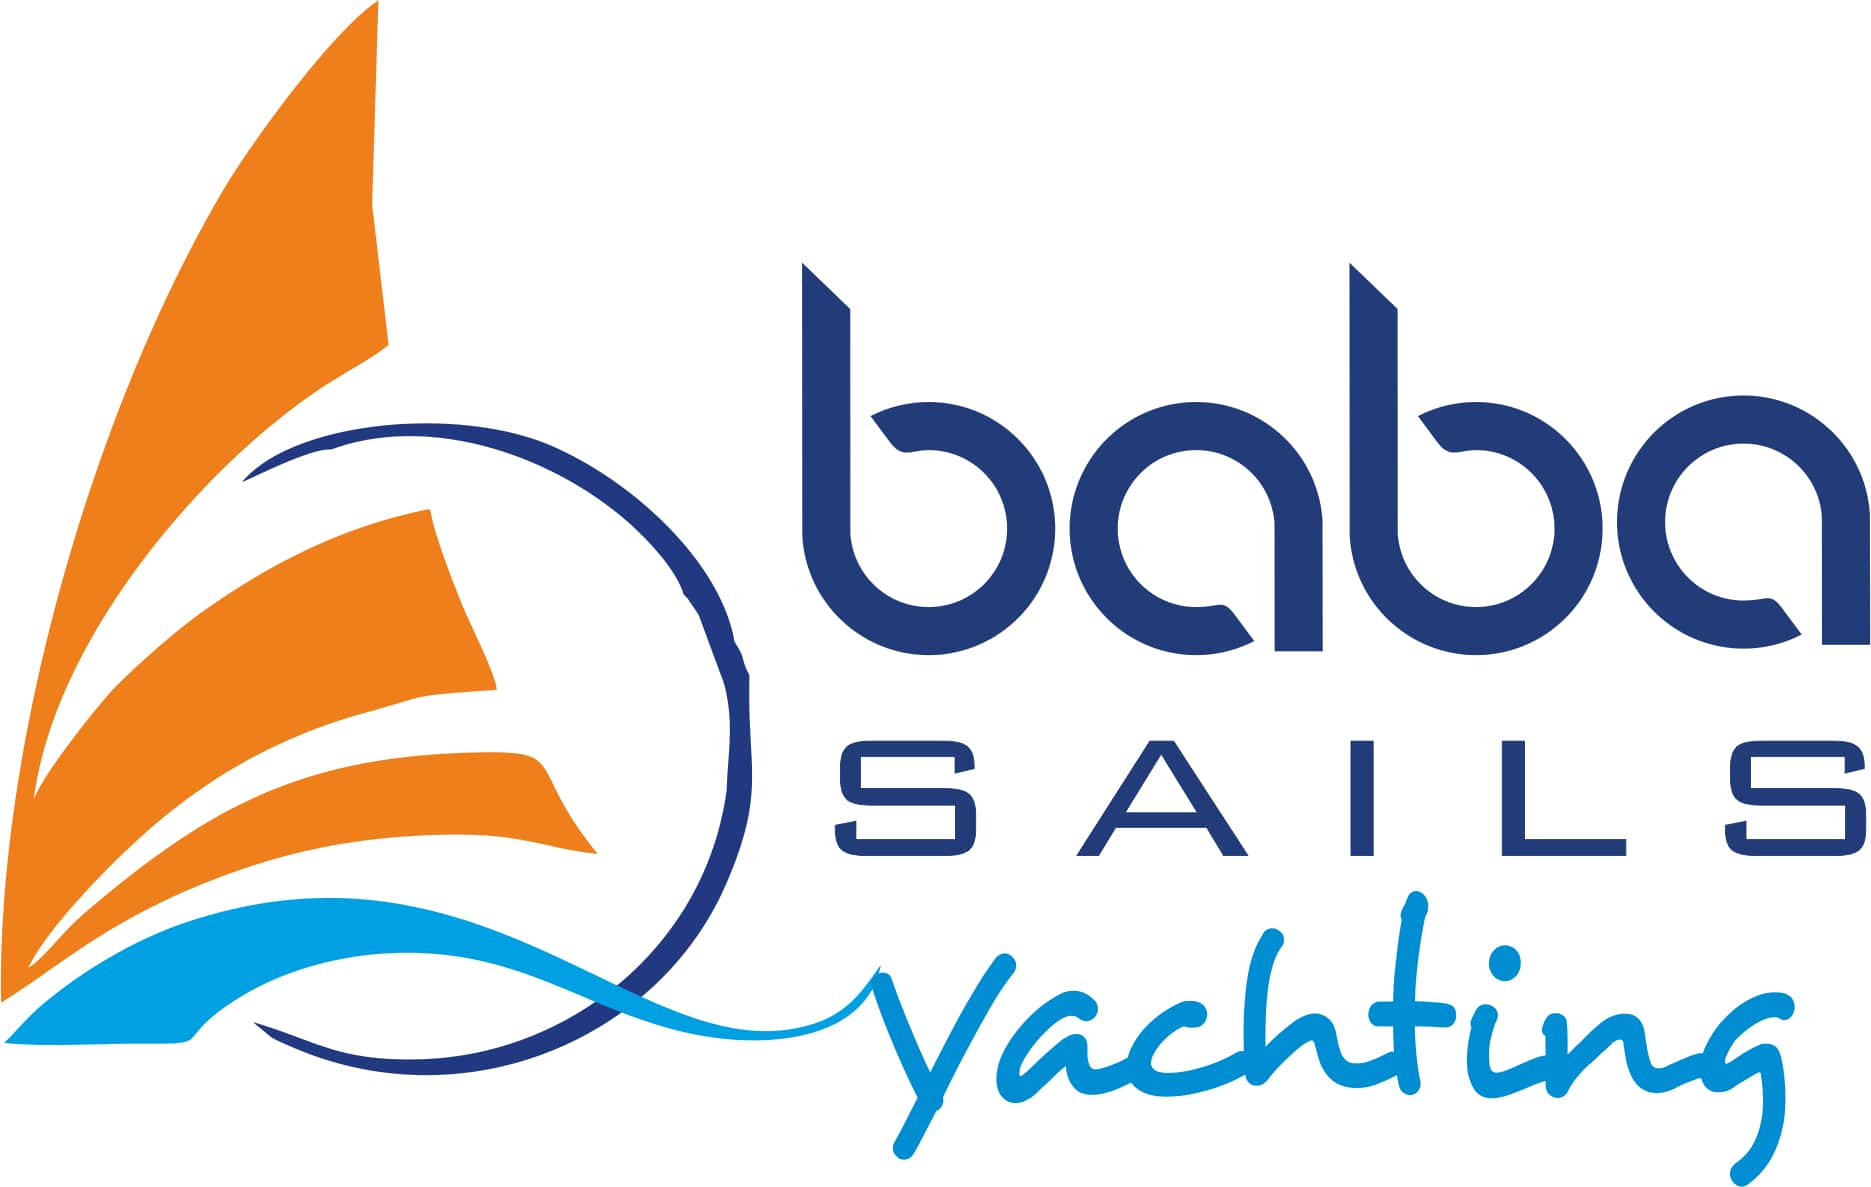 iLuxury Awards - Babasails Yachting